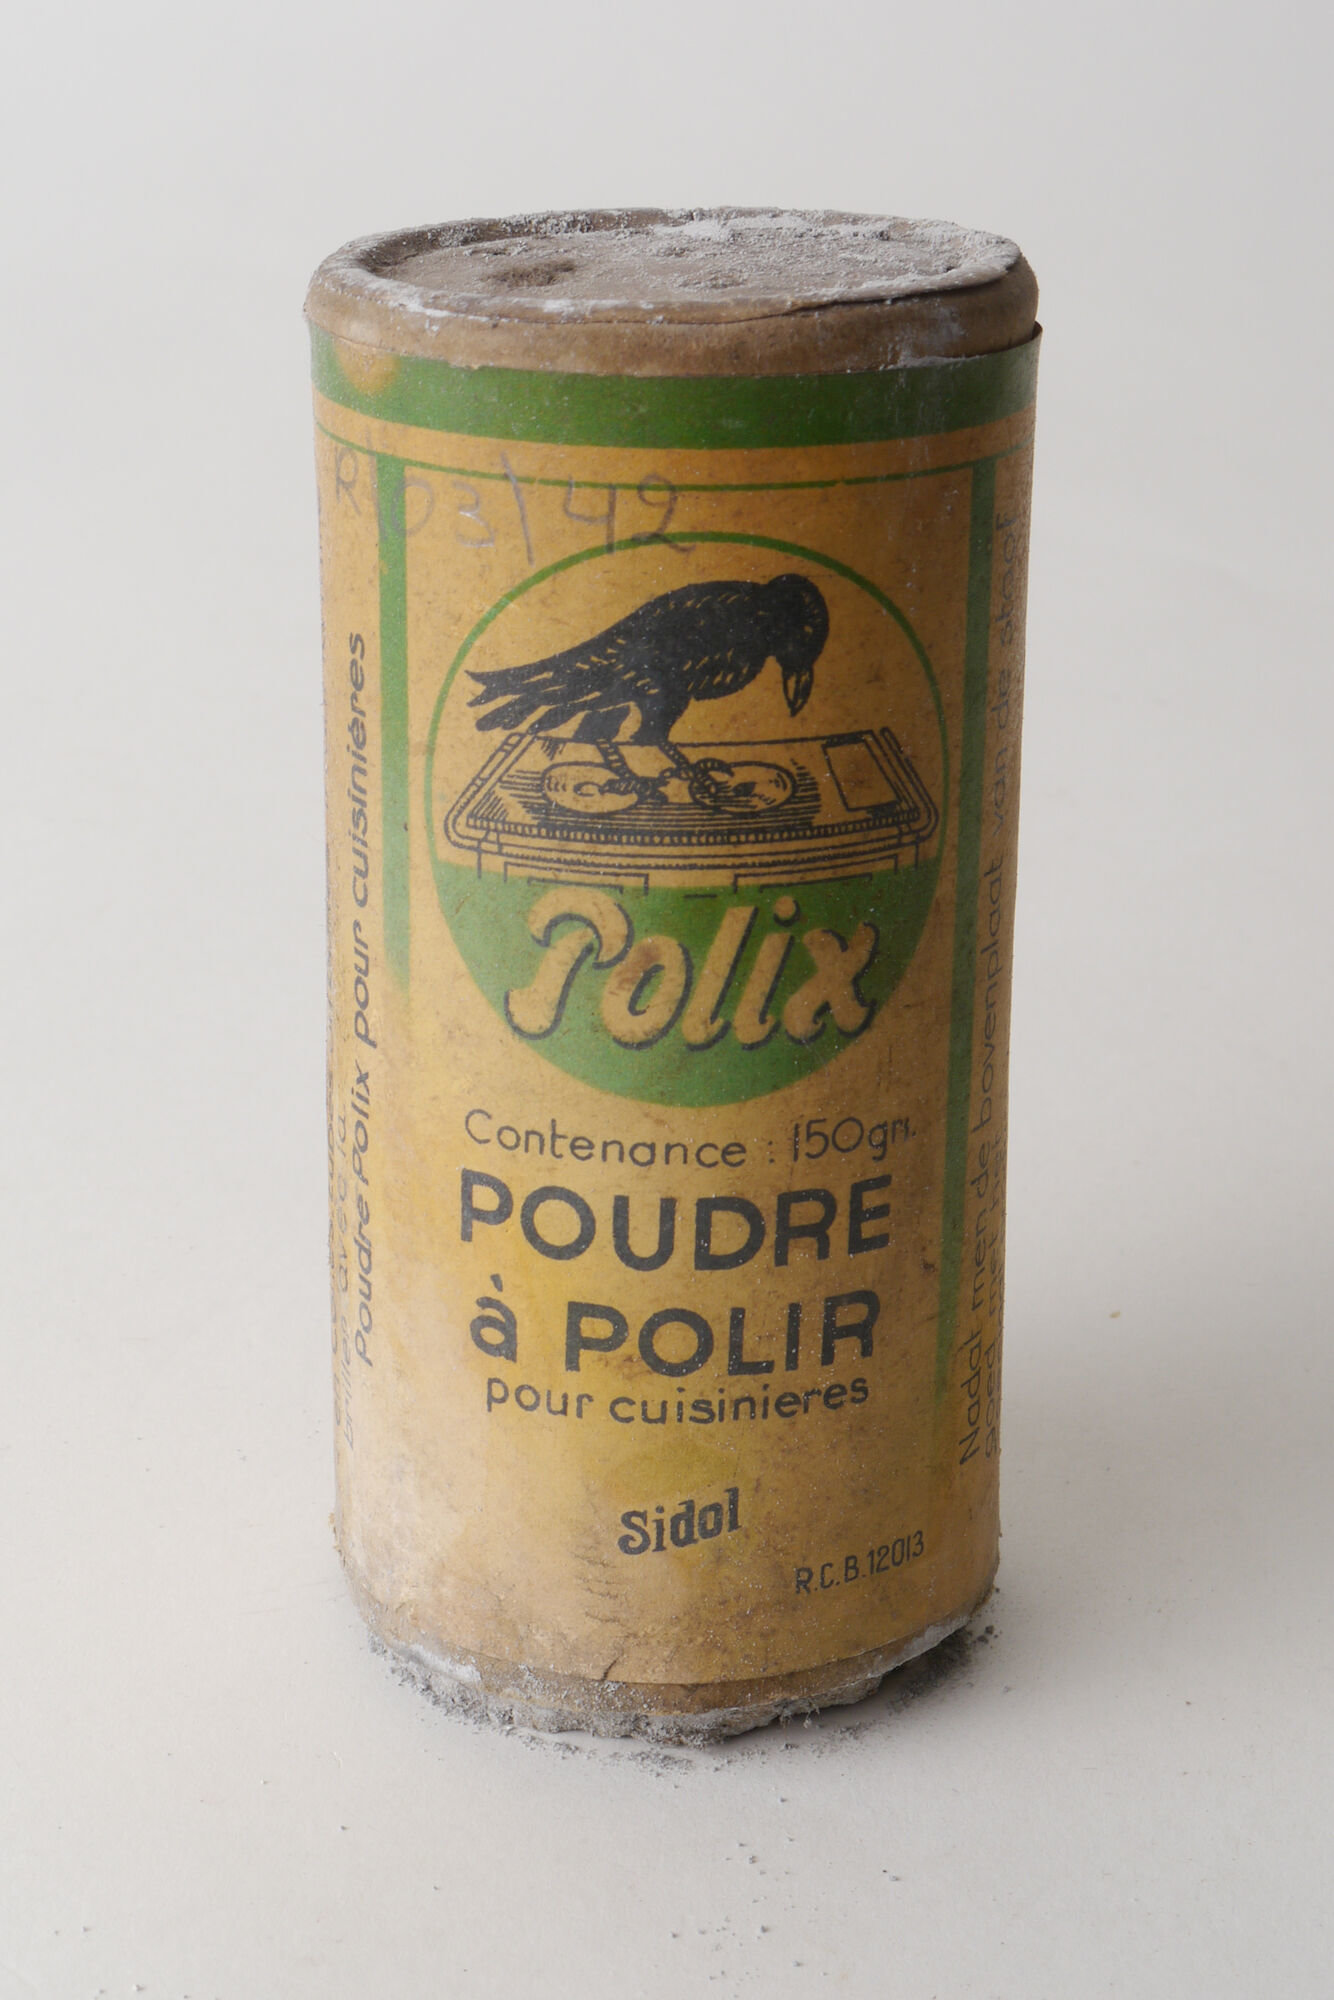 Strooibus met schuurpoeder van het merk Polix